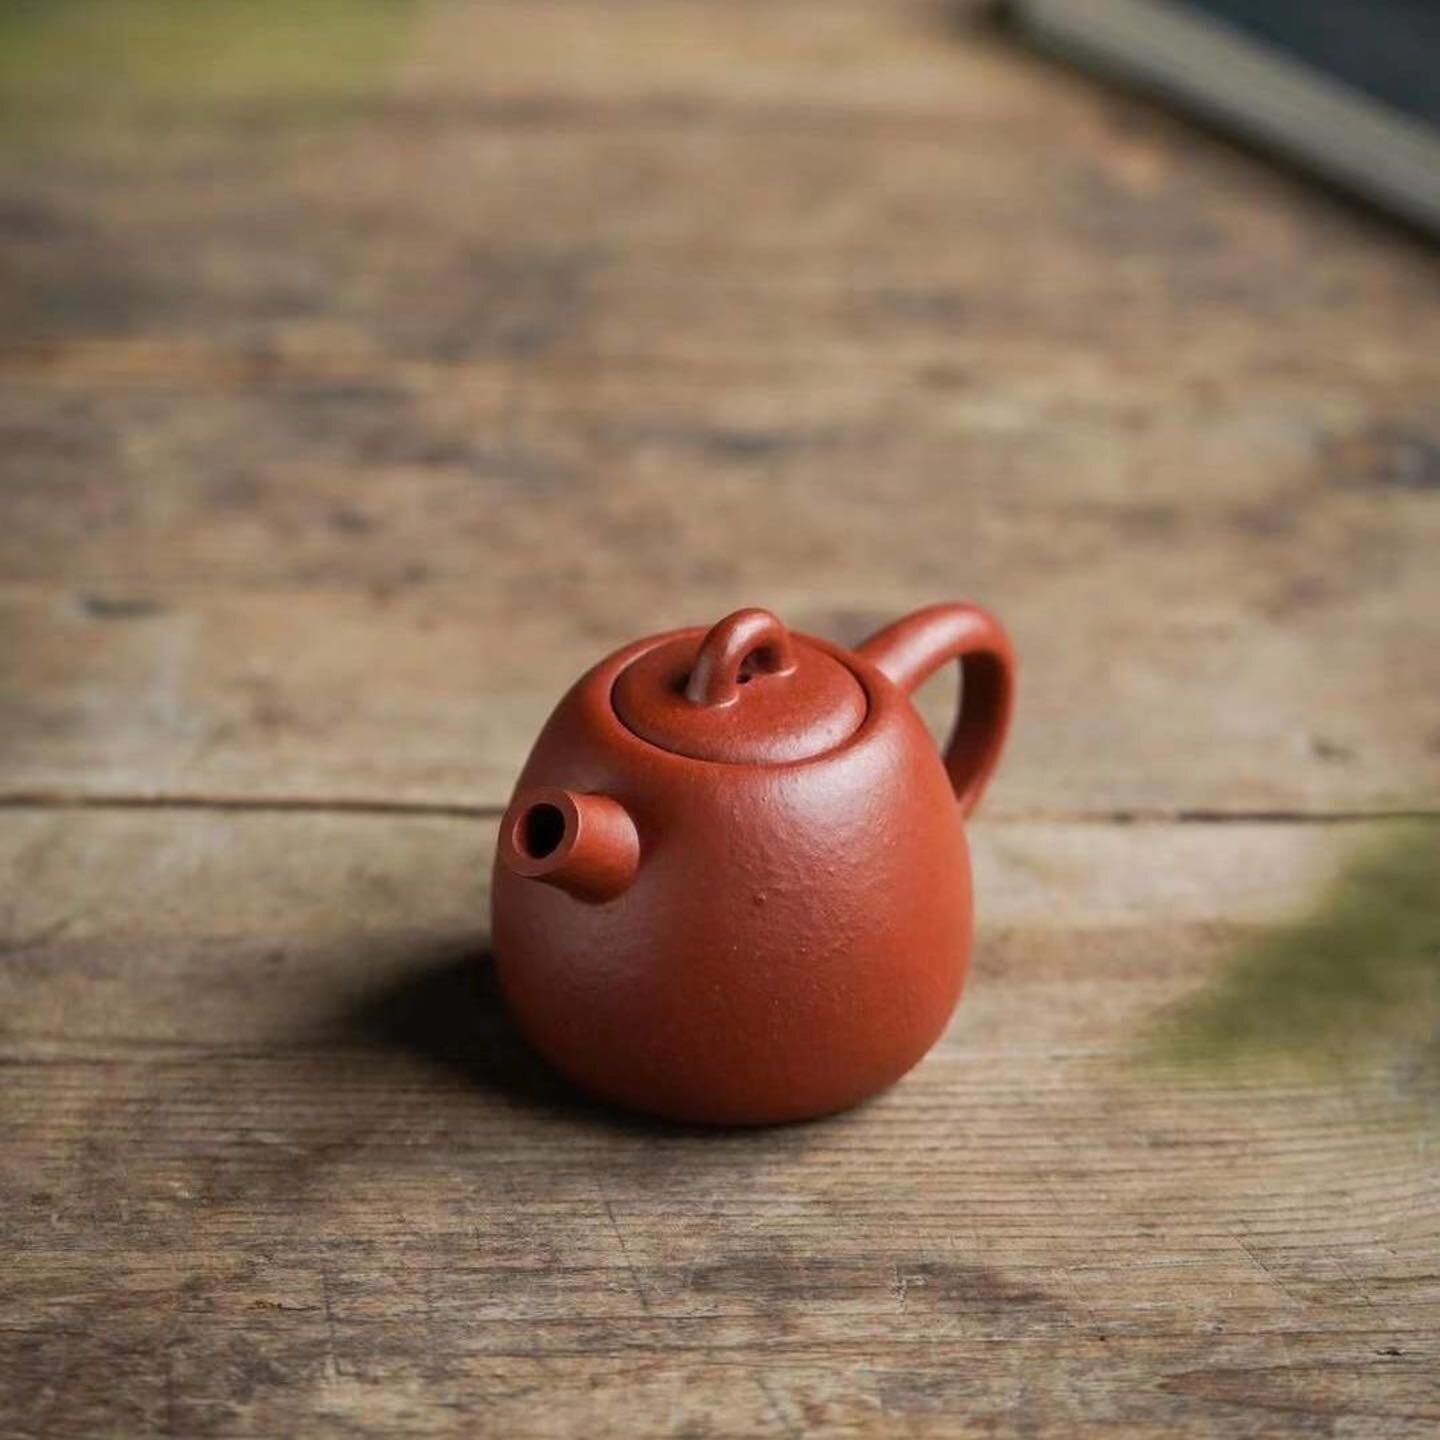 #Repost @tea_in_town
・・・
Zhu Ni Clay &ldquo;Ju Lun&rdquo; Yixing Teapot with cannon mouth.